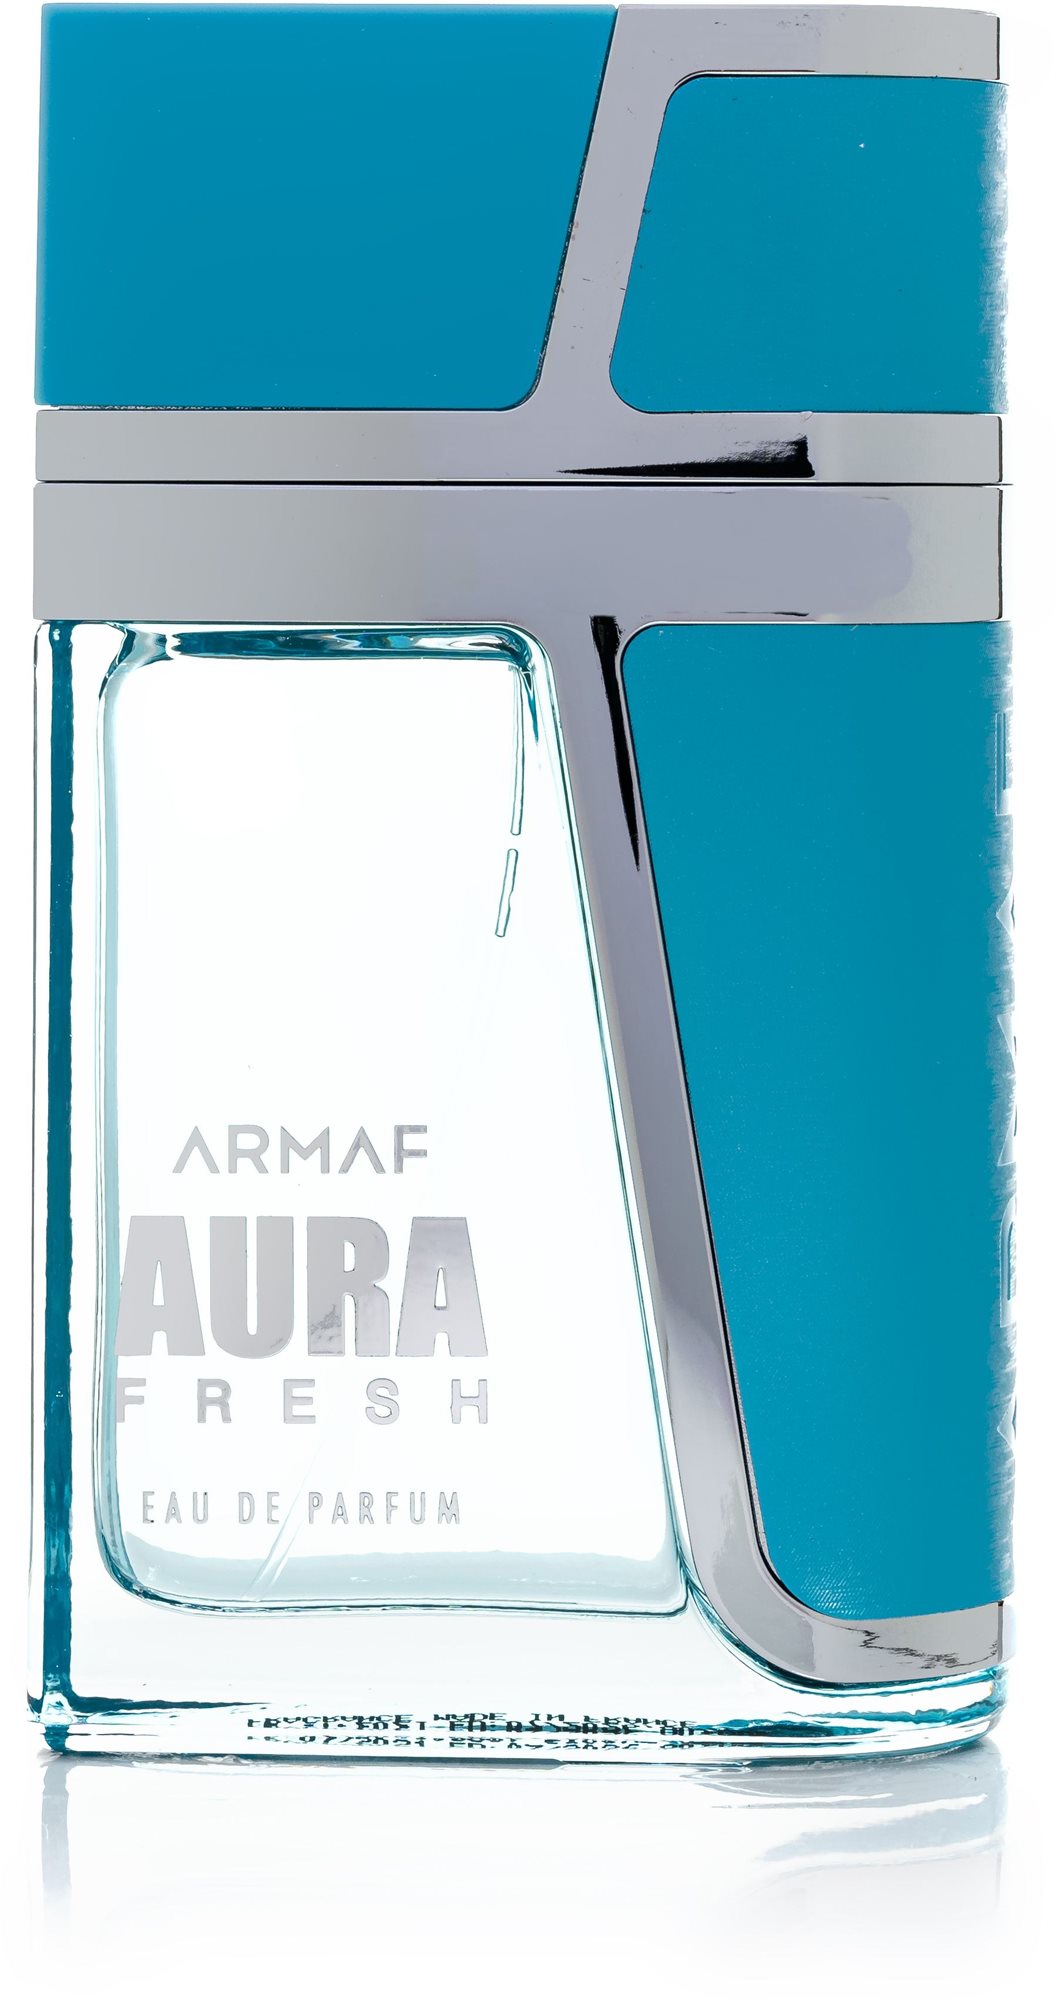 Armaf Aura Fresh Eau de Parfum uraknak 100 ml